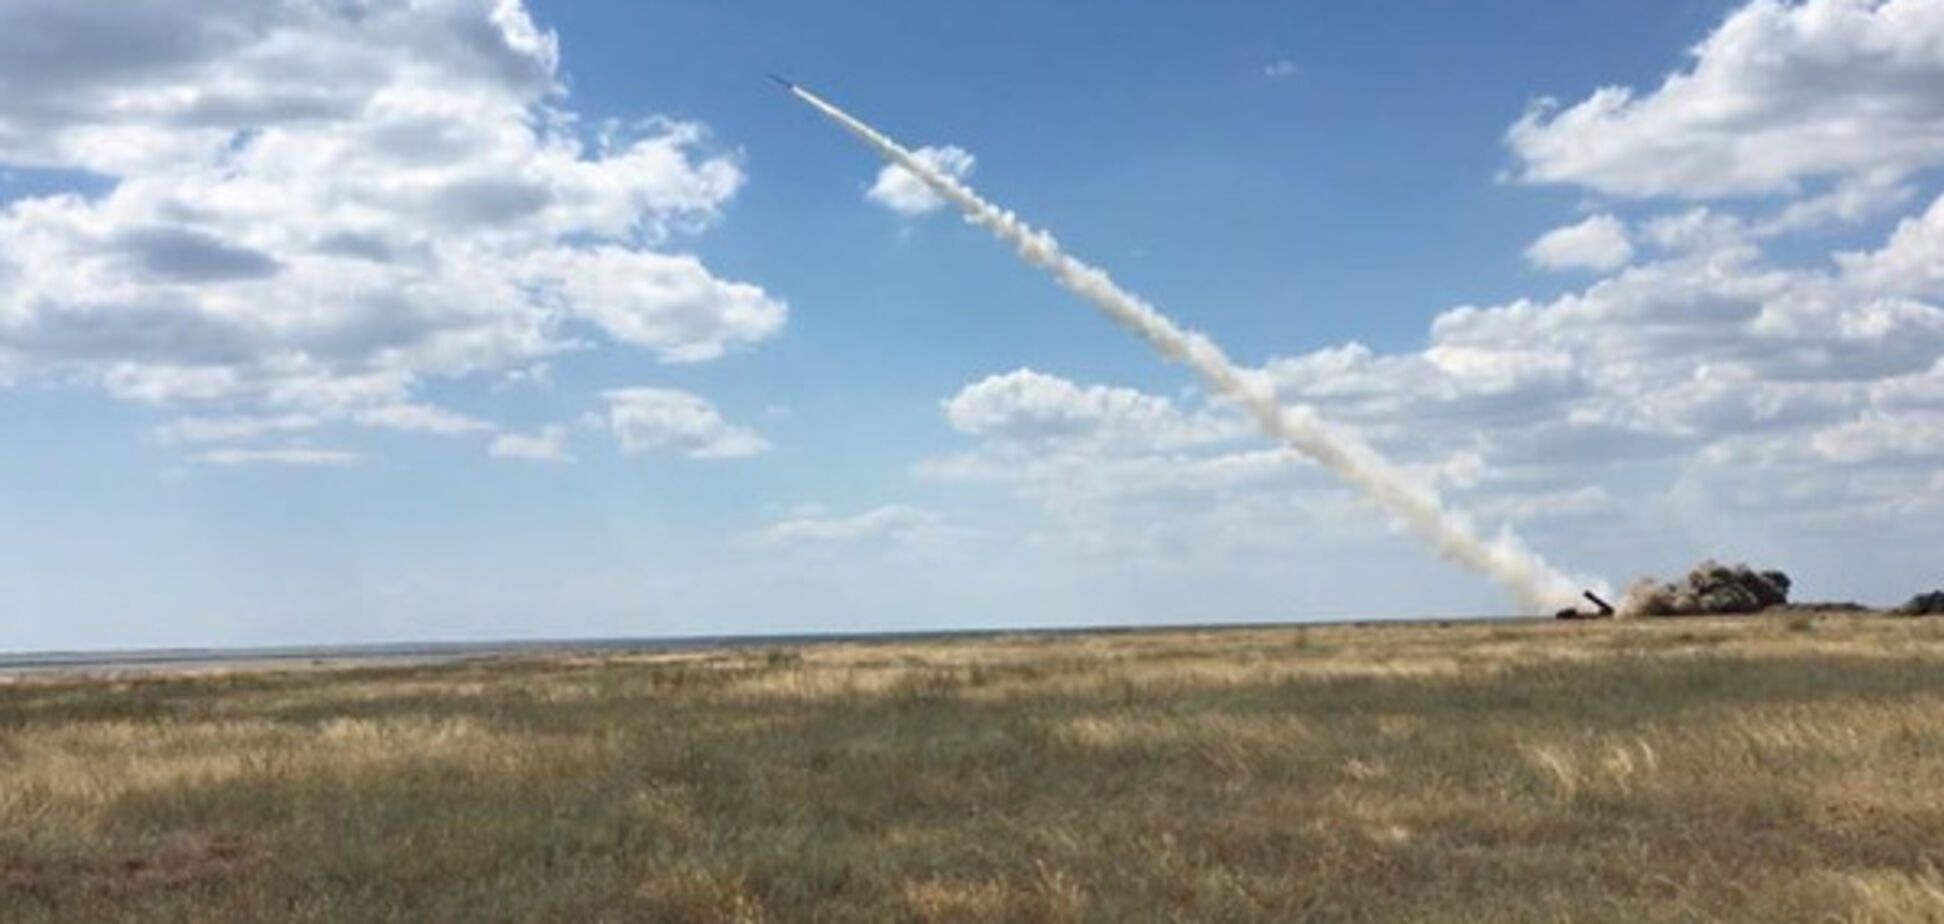 Украина начала ракетные стрельбы, Россия пока не реагирует